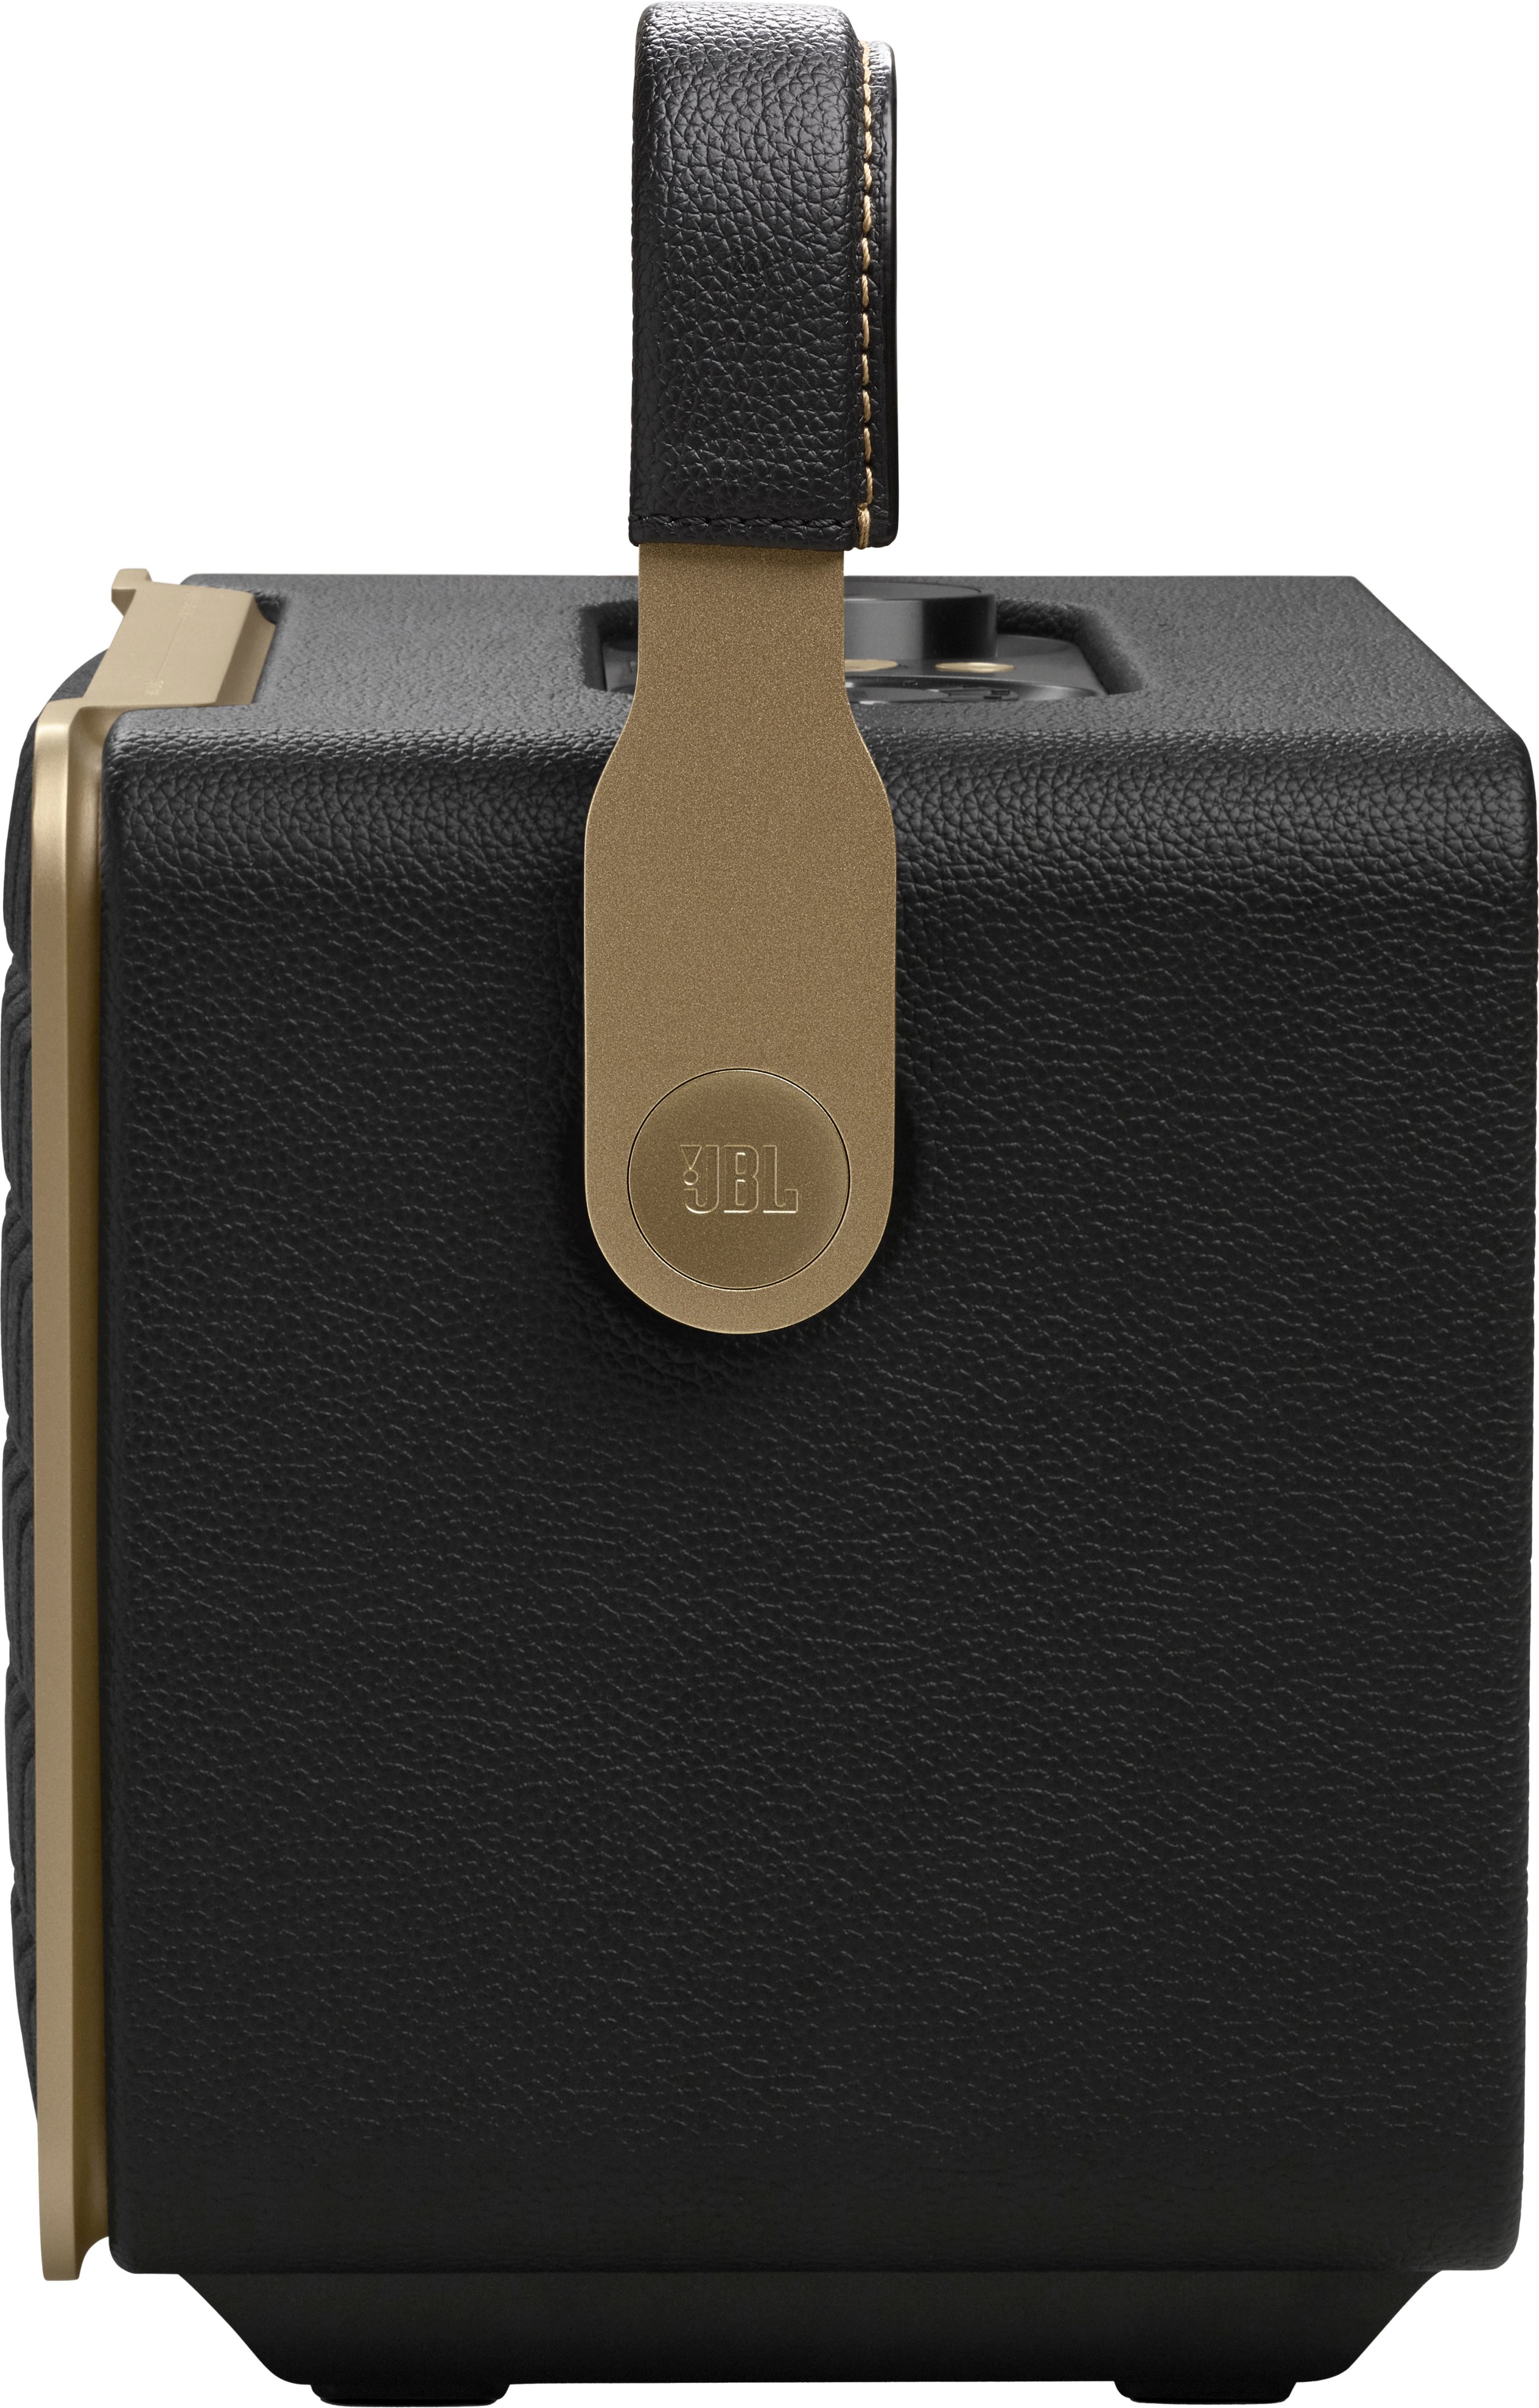 JBL Authentics 300 Smart JBLAUTH300BLKAM Black - Buy Best Speaker Home